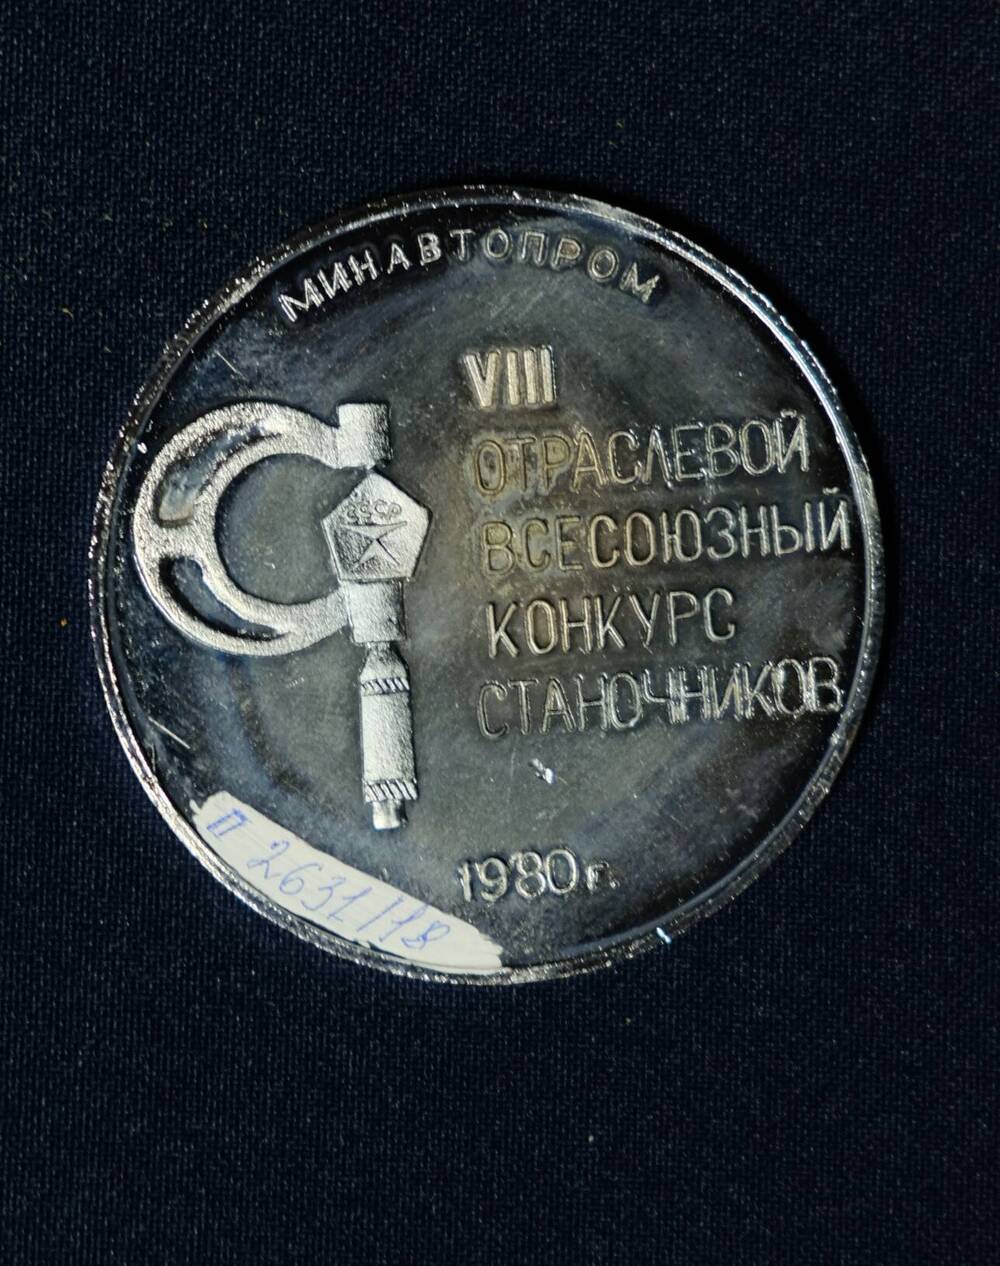 Медаль сувенирная:Минавтопром. VIII отраслевой всесоюзный конкурс станочников 1980 г..